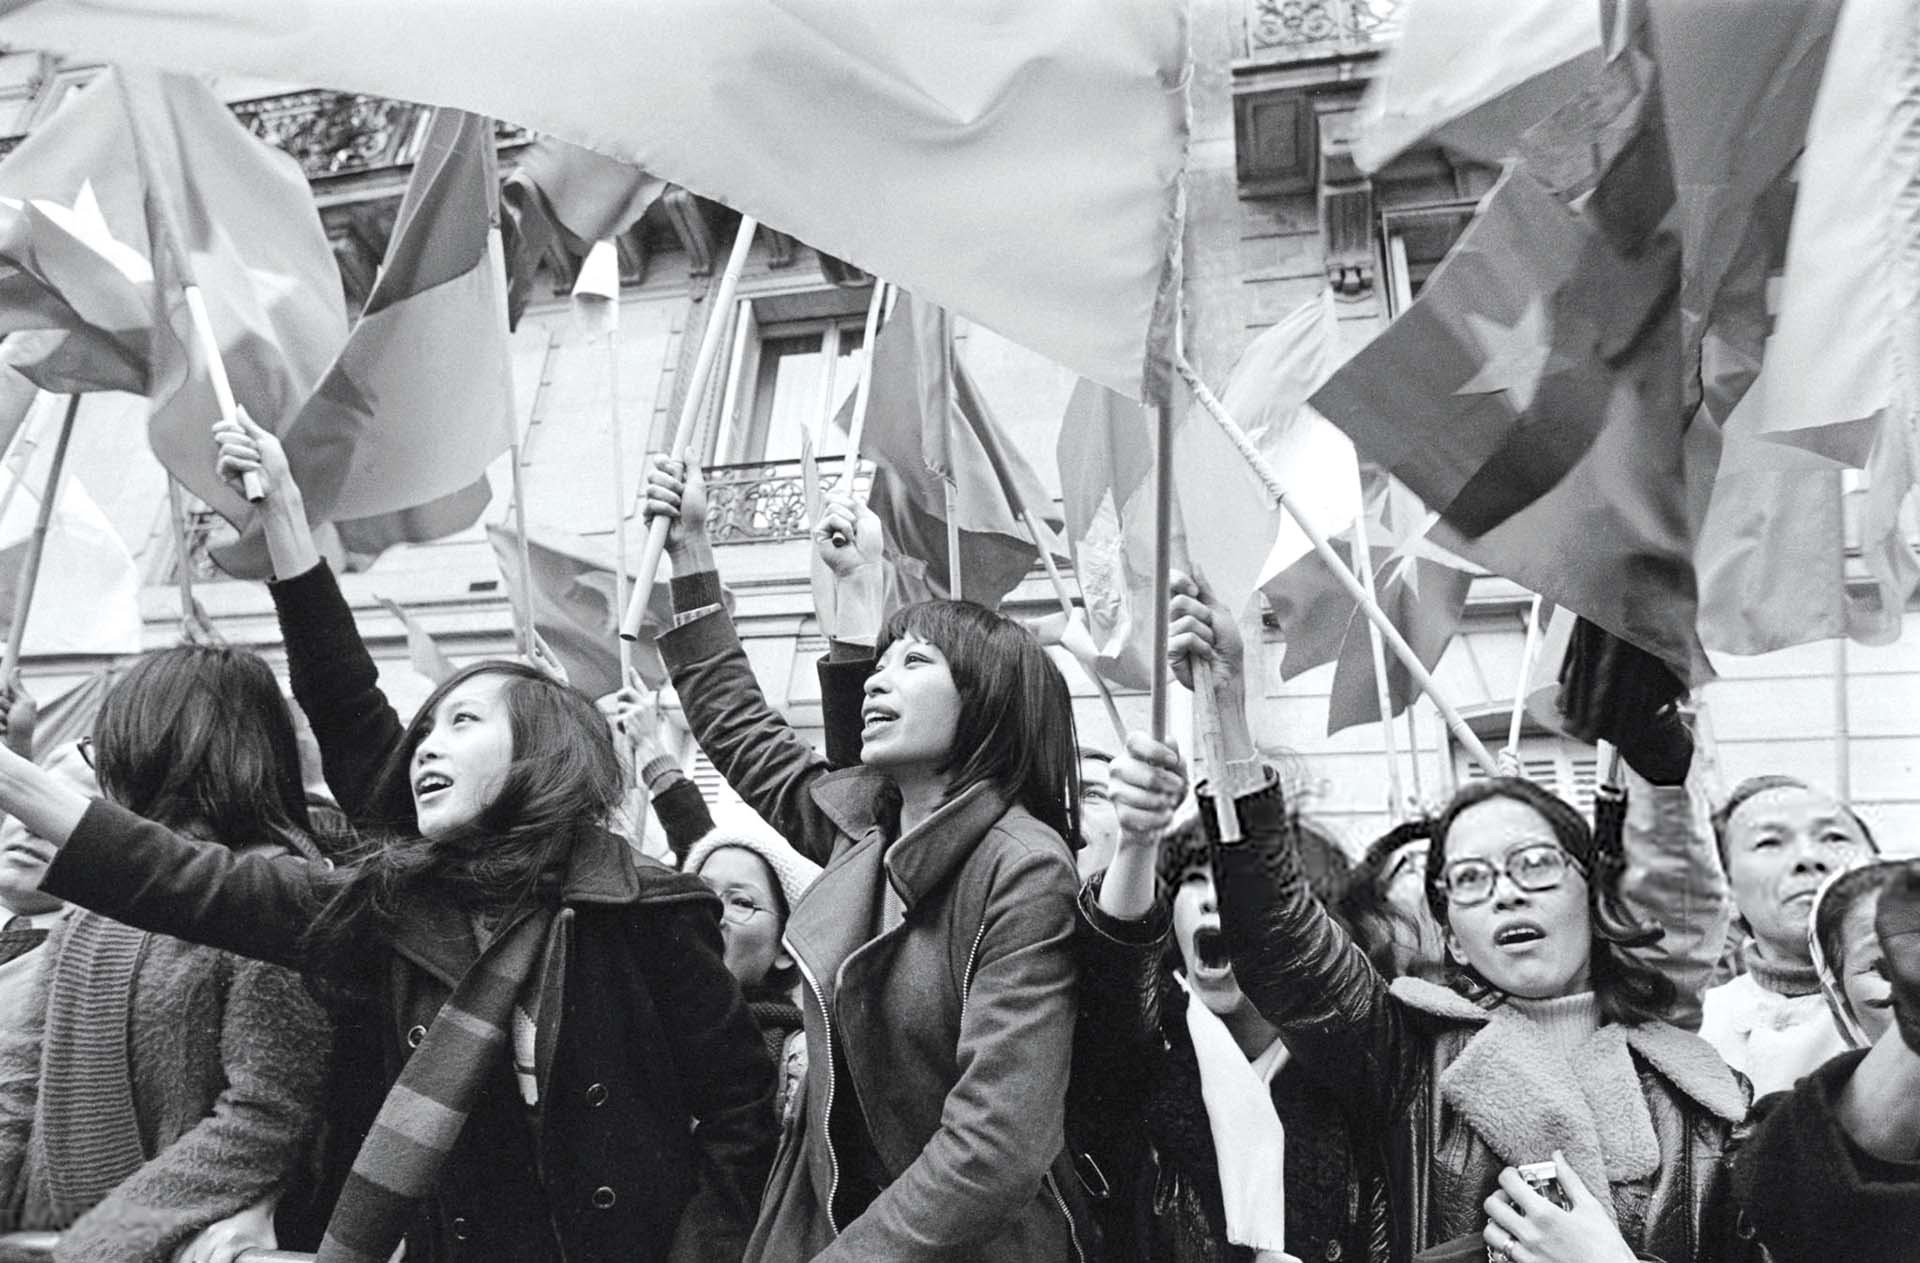 Những người vẫy cờ Việt Nam bên ngoài Trung tâm Hội nghị Quốc tế ở Paris, Pháp, trong ngày Hiệp định Paris được ký kết, ngày 27/01/1973.  (Nguồn: Getty Images)